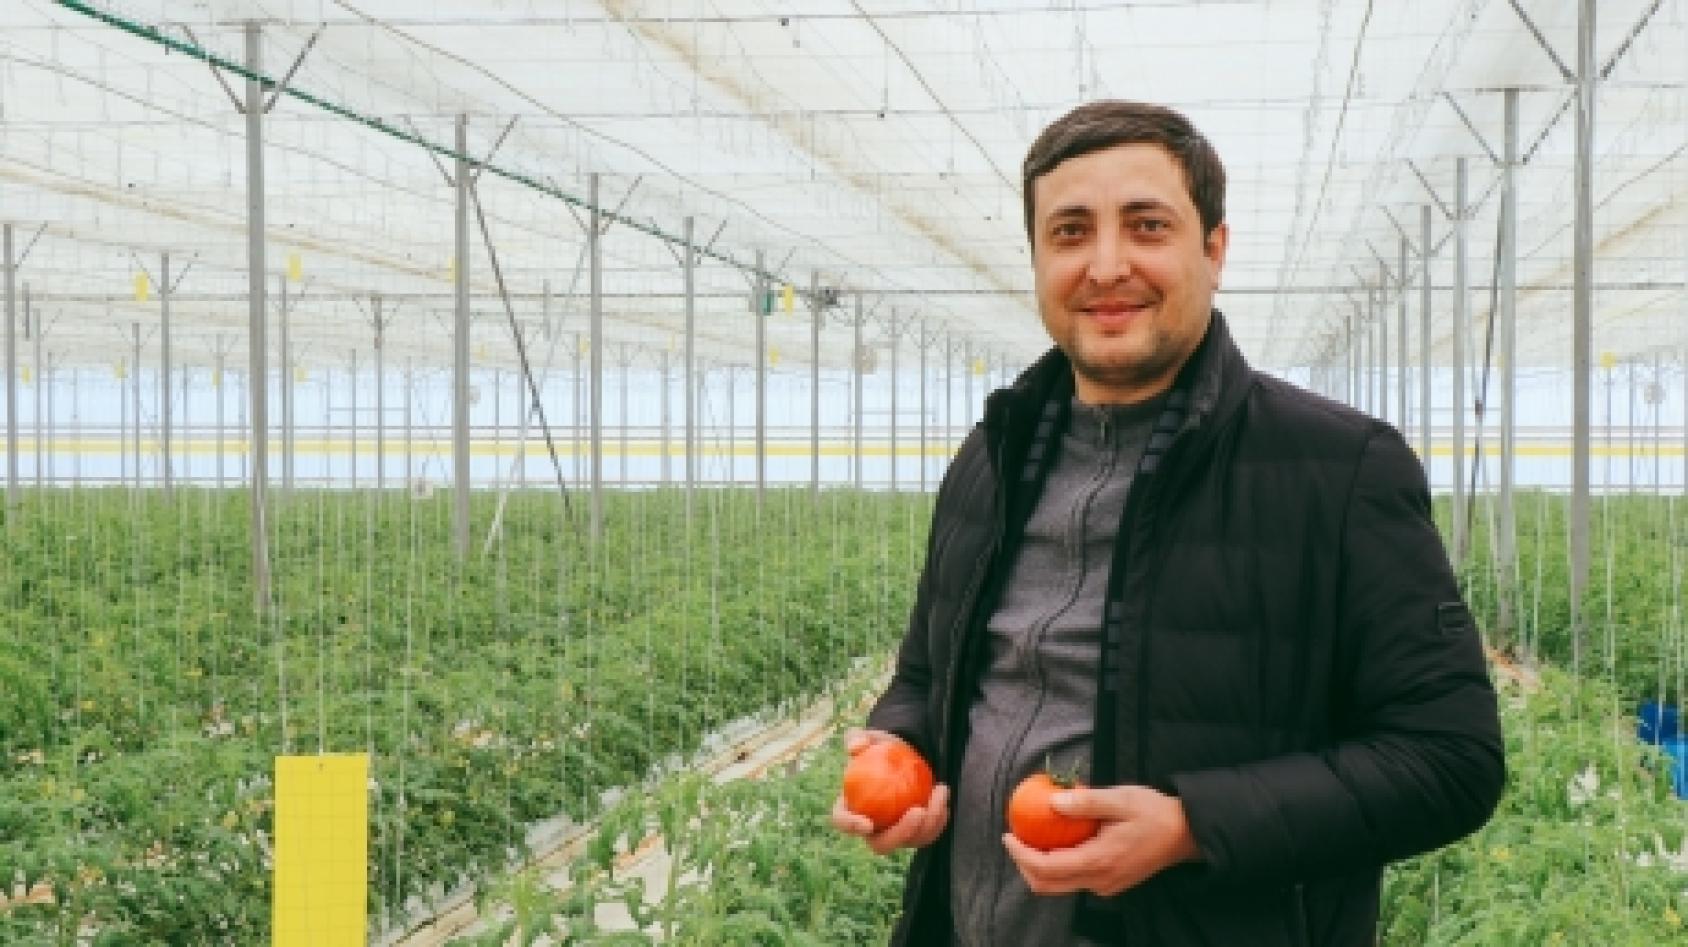 Un homme est photographié debout dans une serre, face caméra, tenant deux tomates dans les mains et souriant.